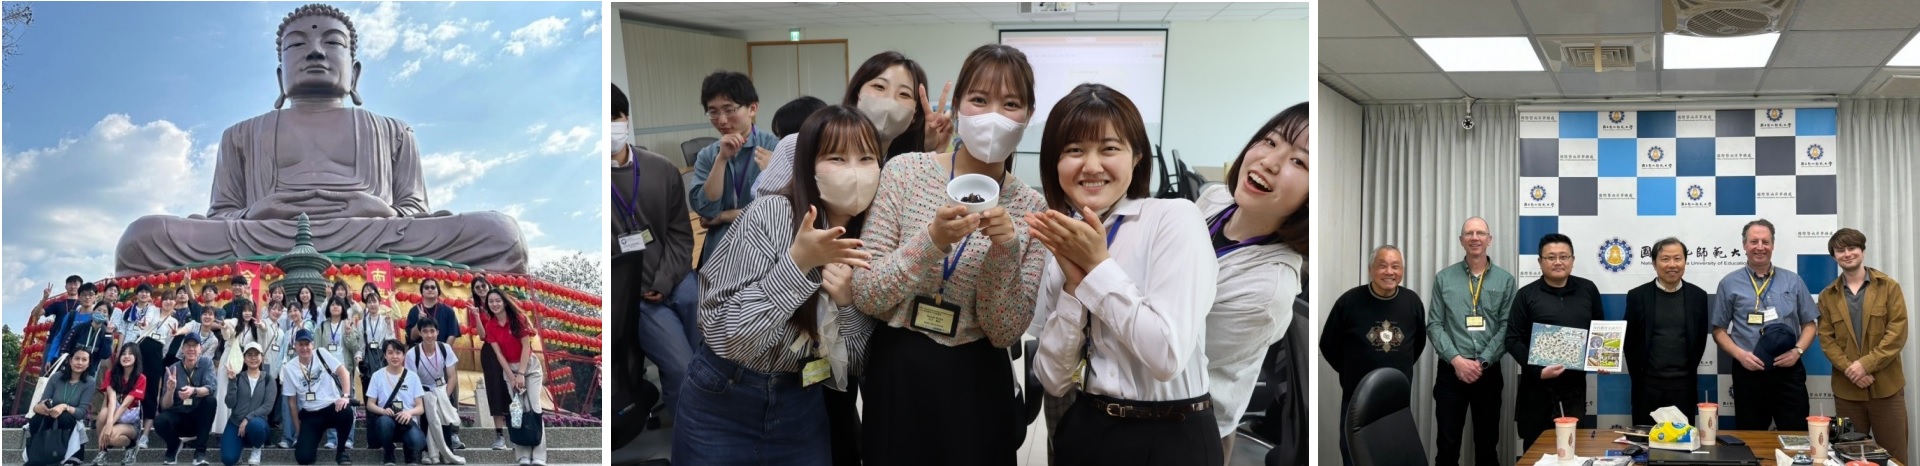 日本姊妹校愛知教育大學來校文化交流 Aichi University of Education in Japan Visits NCUE for Cultural Exchange